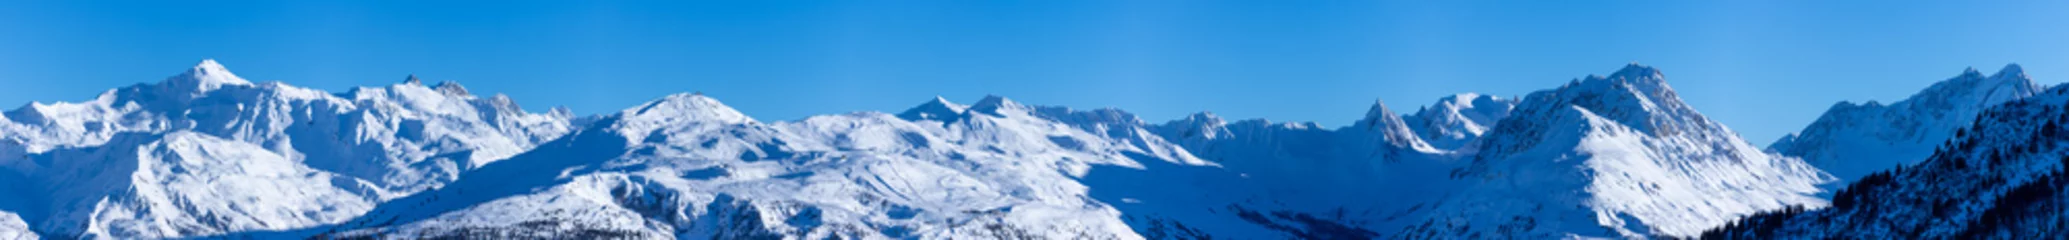 Gordijnen vue ultra panoramique sur une chaîne de montagnes enneigées des alpes © Tof - Photographie